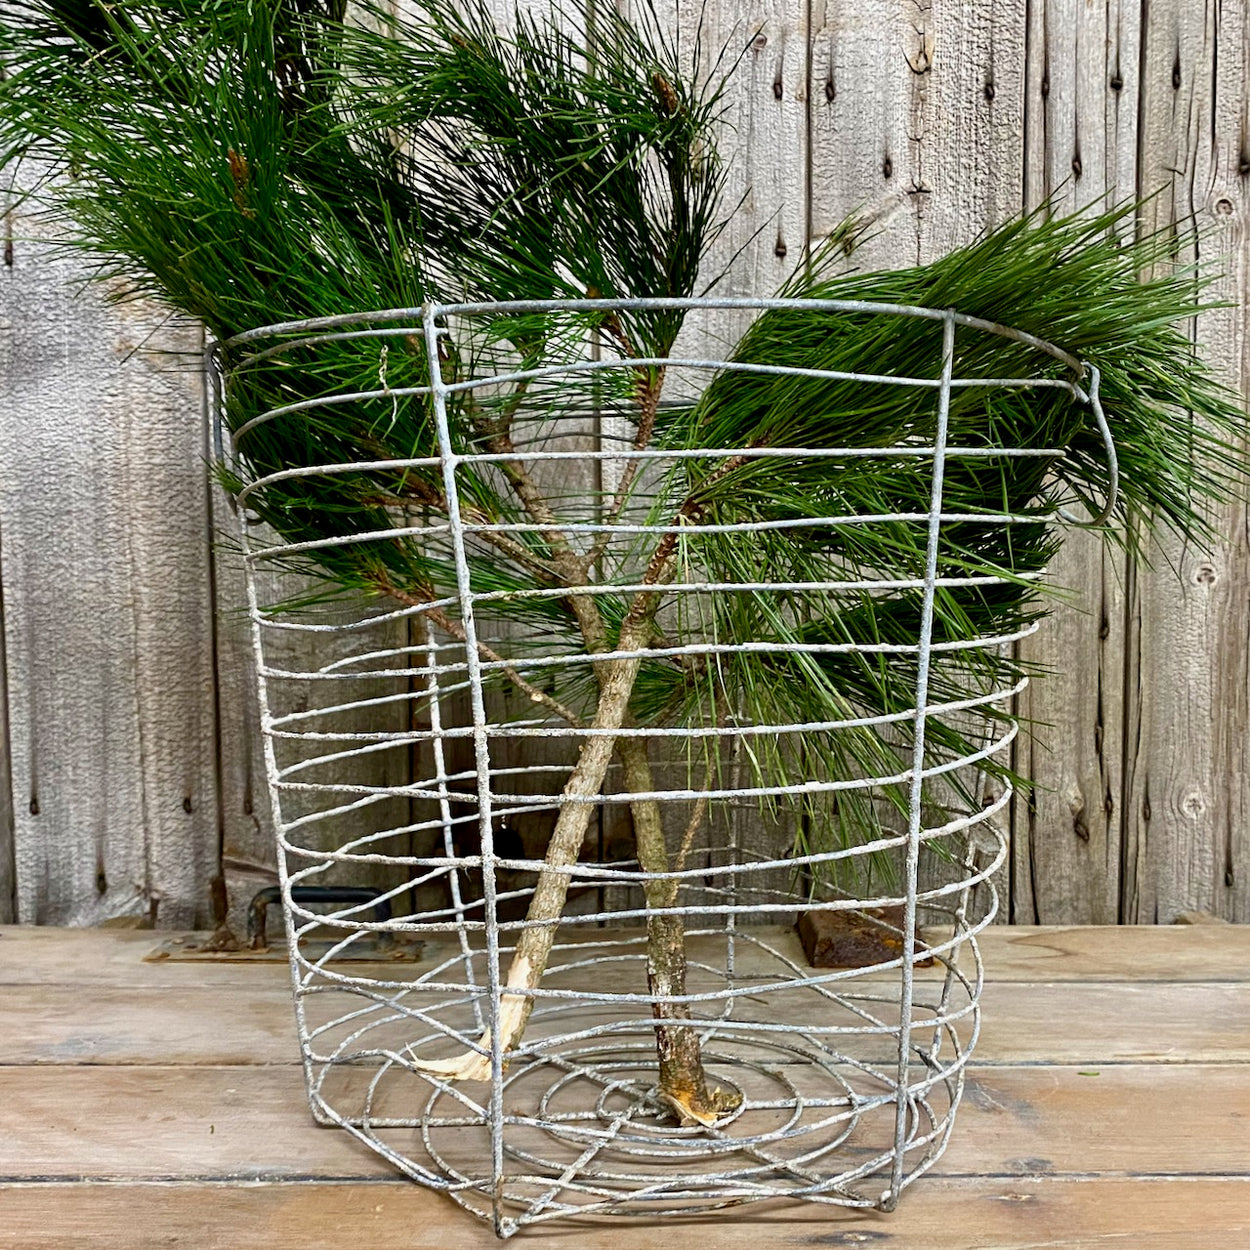 Large Vintage Wire Basket